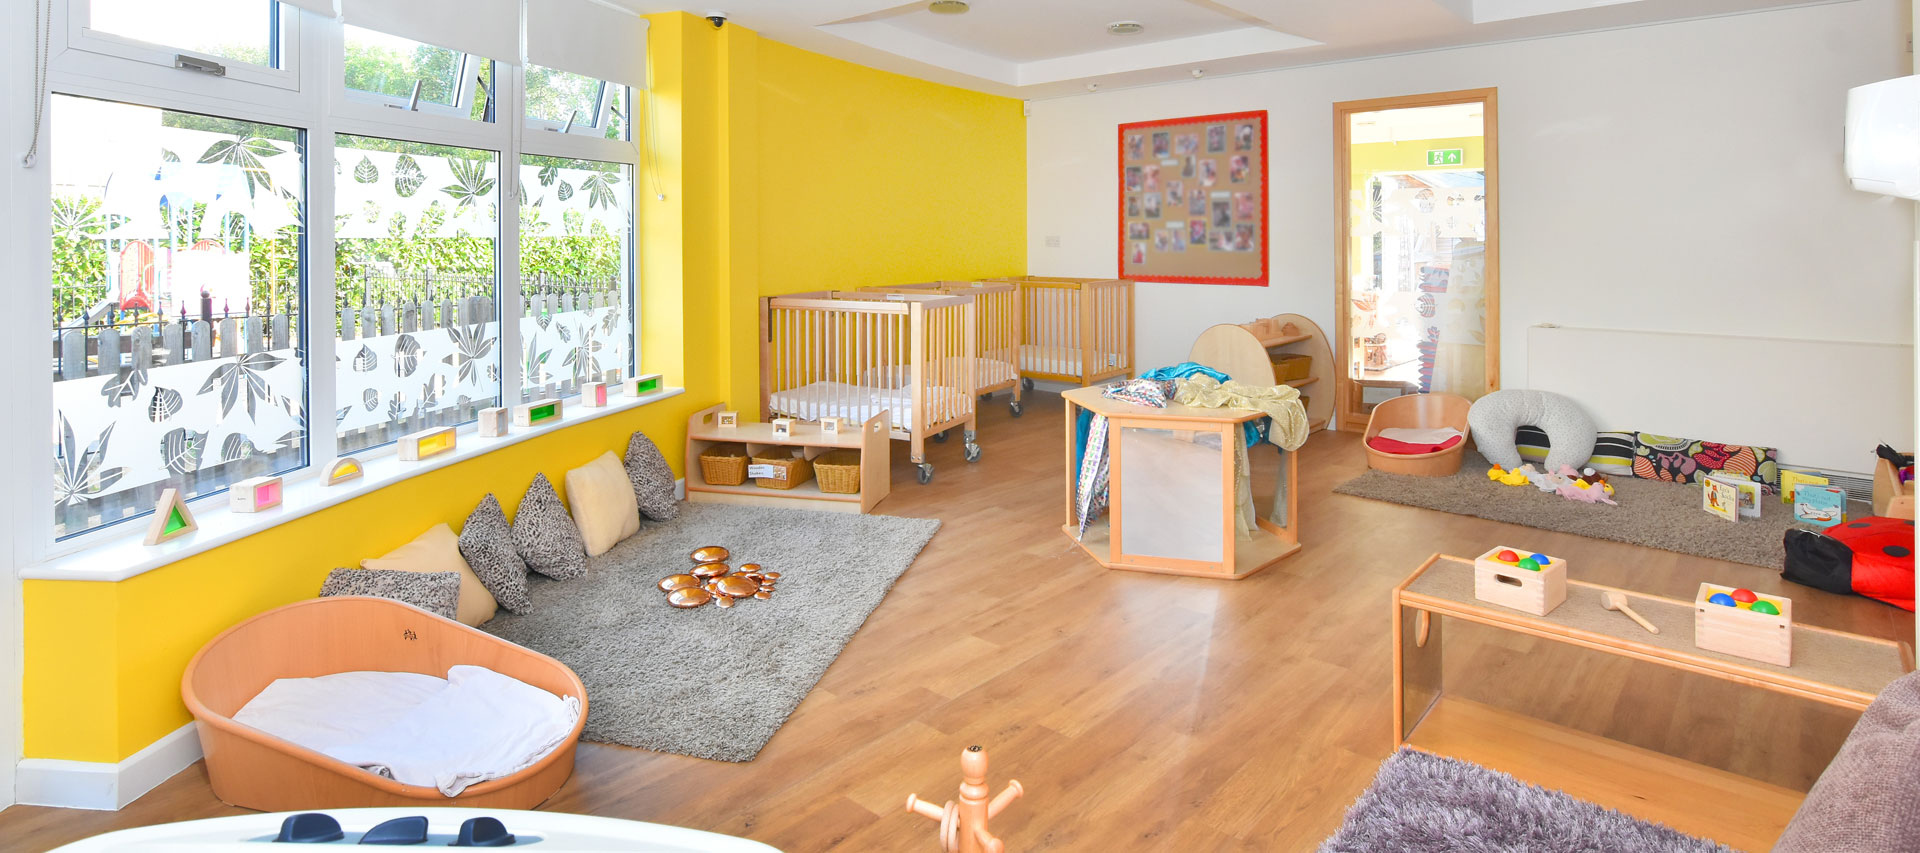 Teddington Day Nursery and Preschool